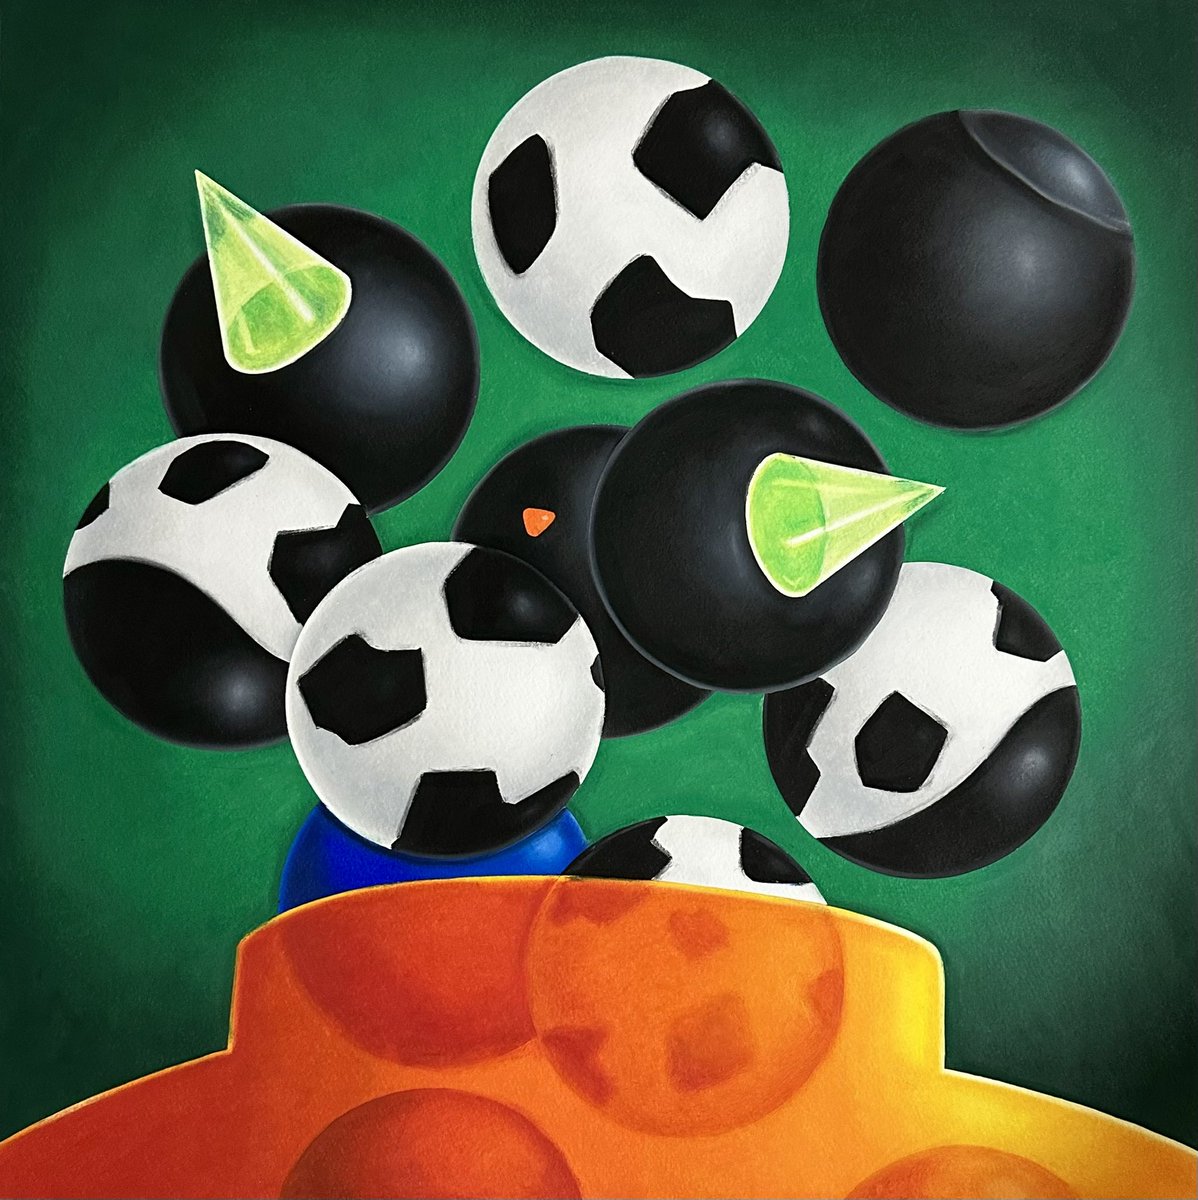 「球状分裂 」|杉野ギーノスのイラスト